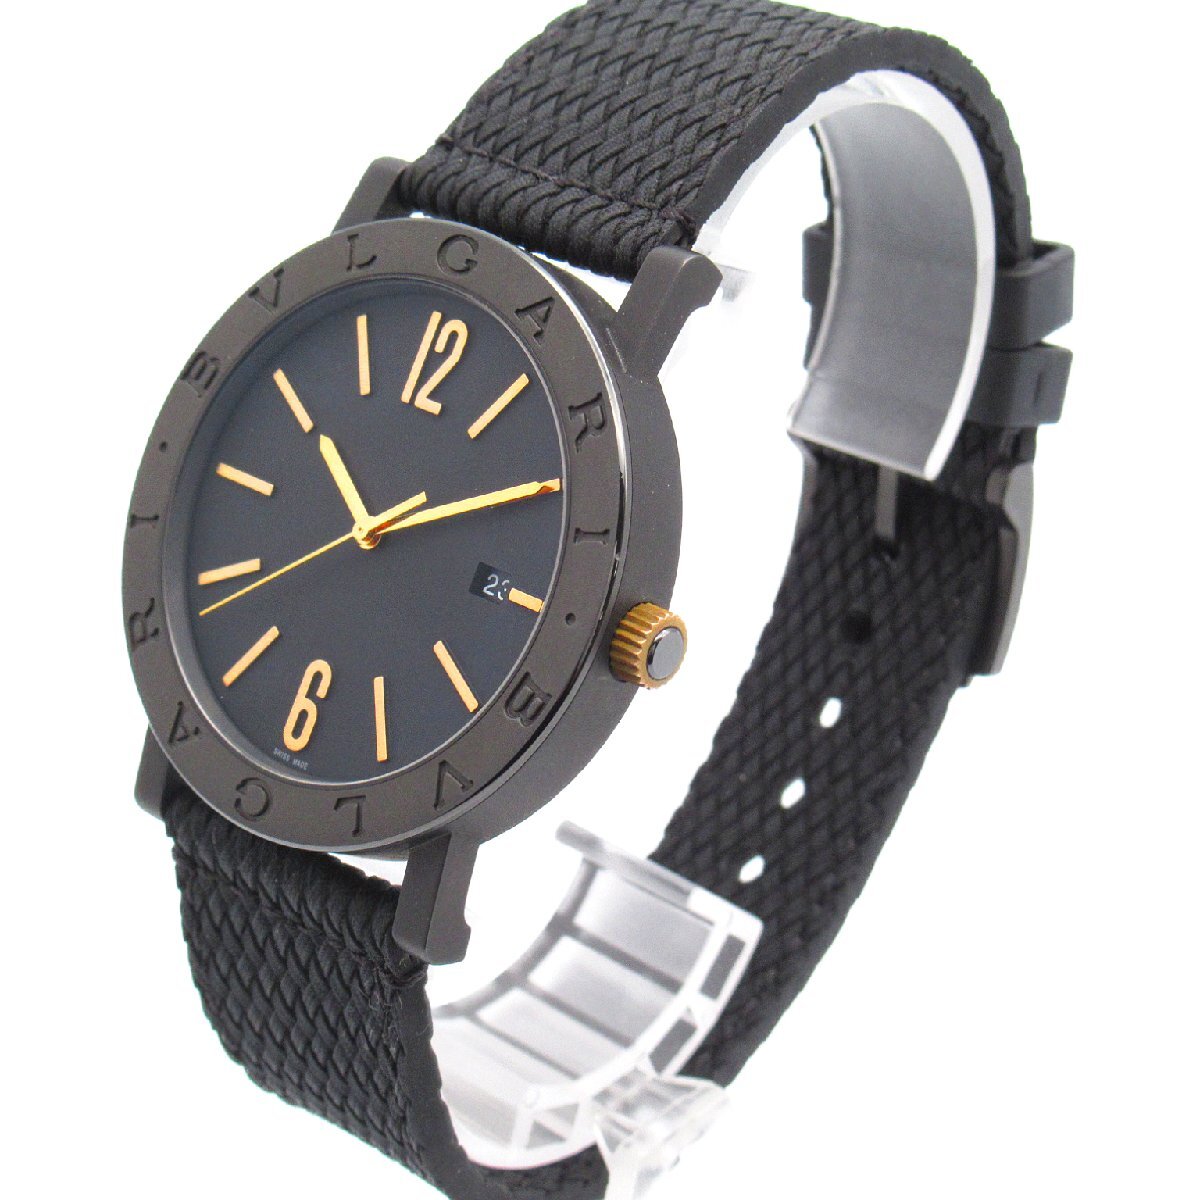  BVLGARY BVLGARY BVLGARY Solotempo бренд off BVLGARI нержавеющая сталь наручные часы SS/ Raver б/у мужской 